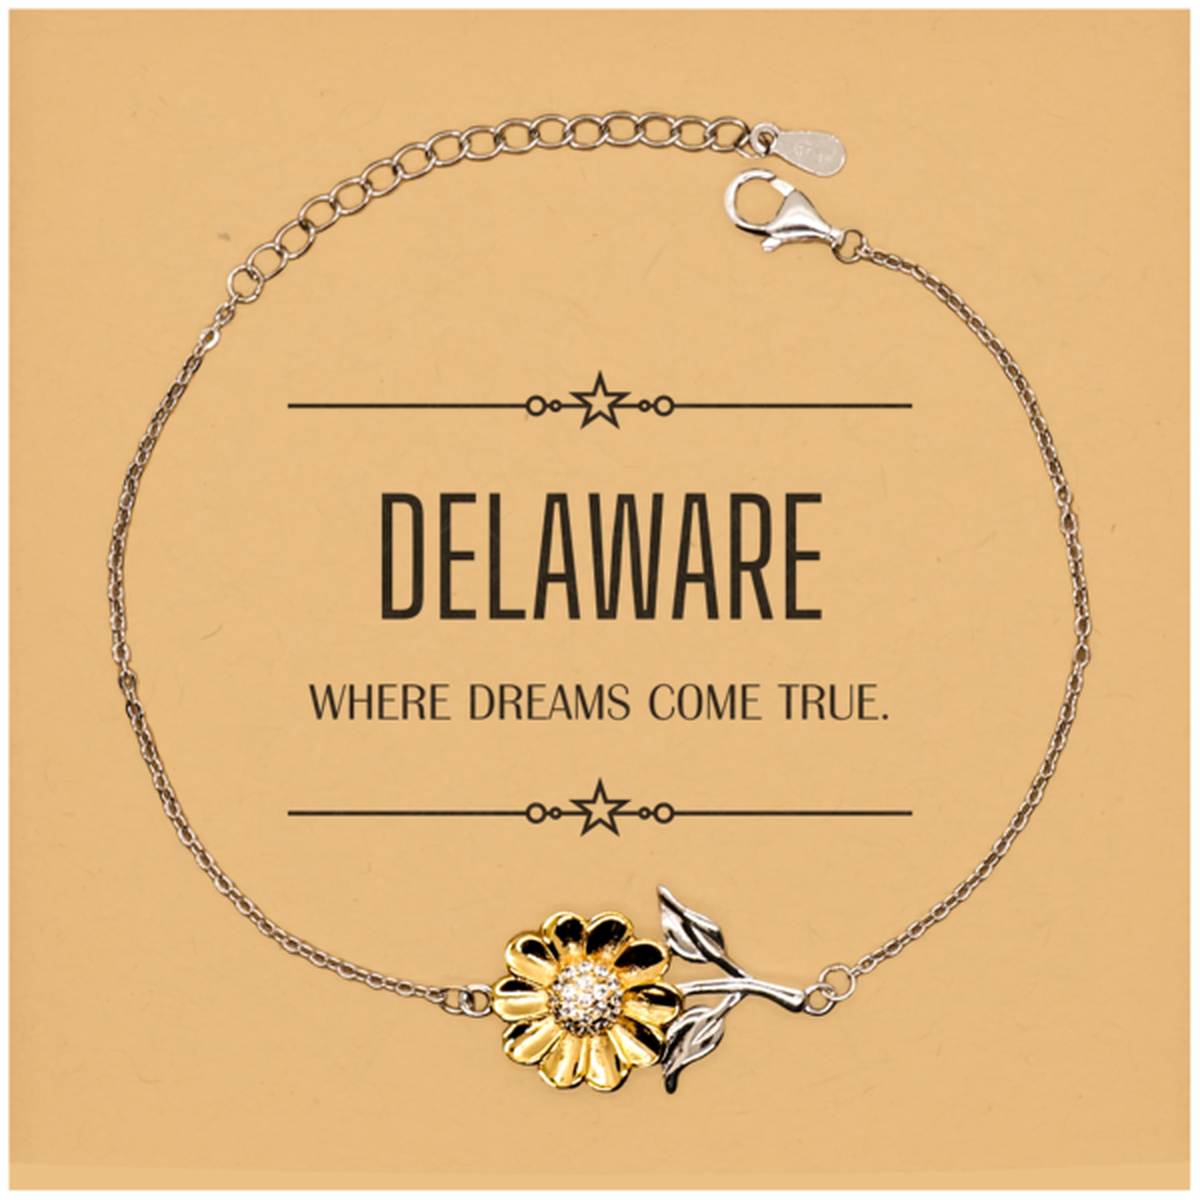 Love Delaware State Sunflower Bracelet, Delaware Where dreams come true, Birthday Christmas Inspirational Gifts For Delaware Men, Women, Friends